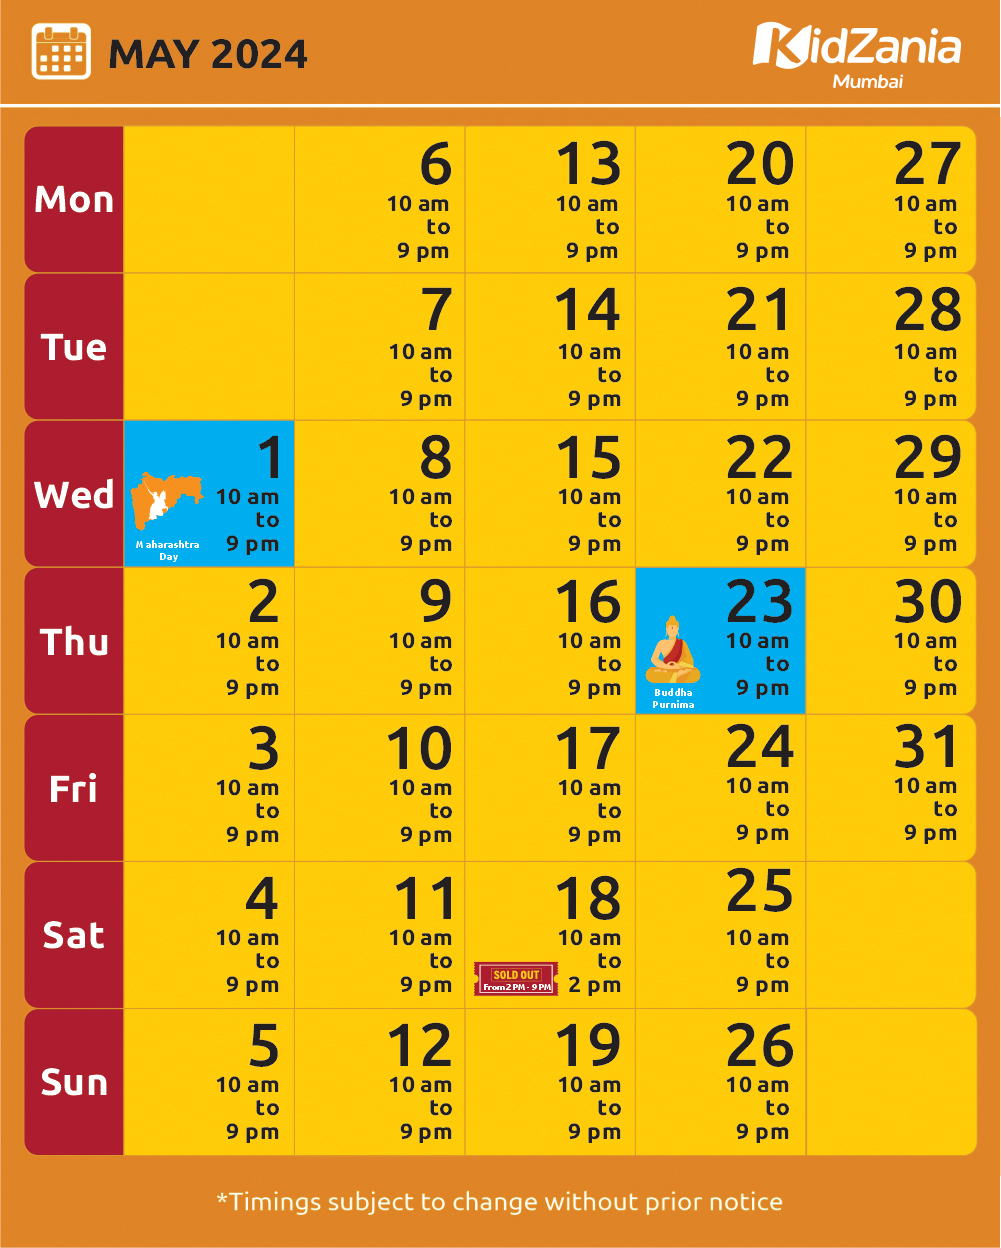 KidZania Mumbai Calendar May-24